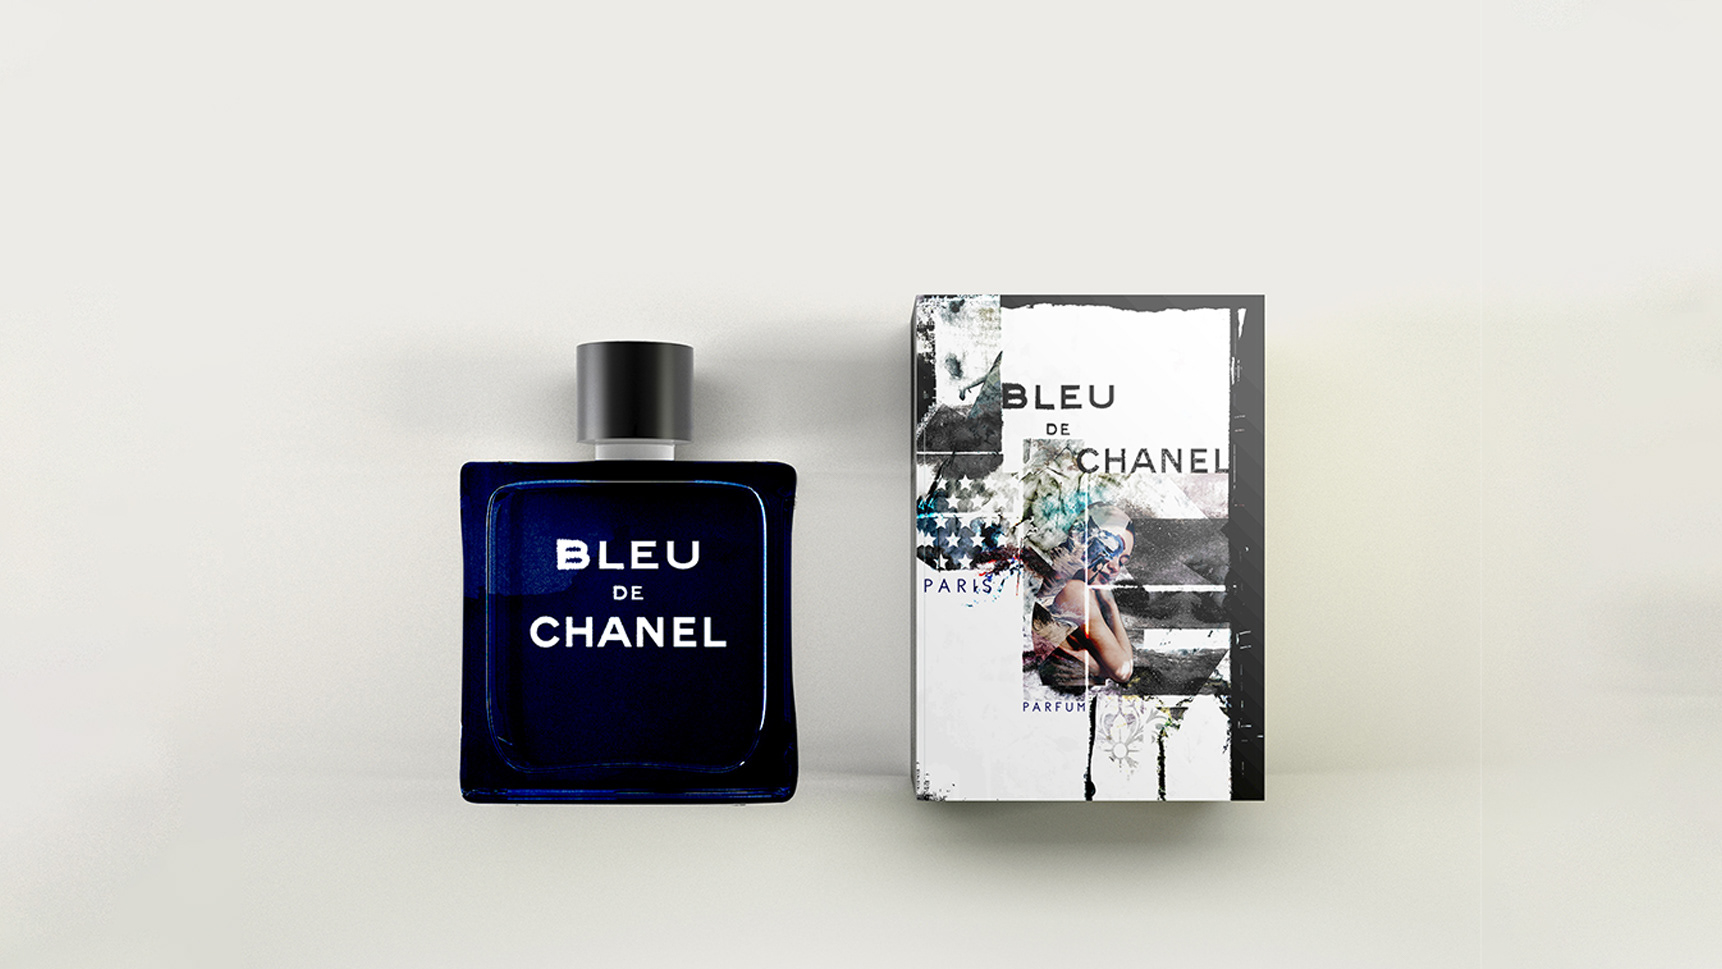 perfume similar to bleu de chanel